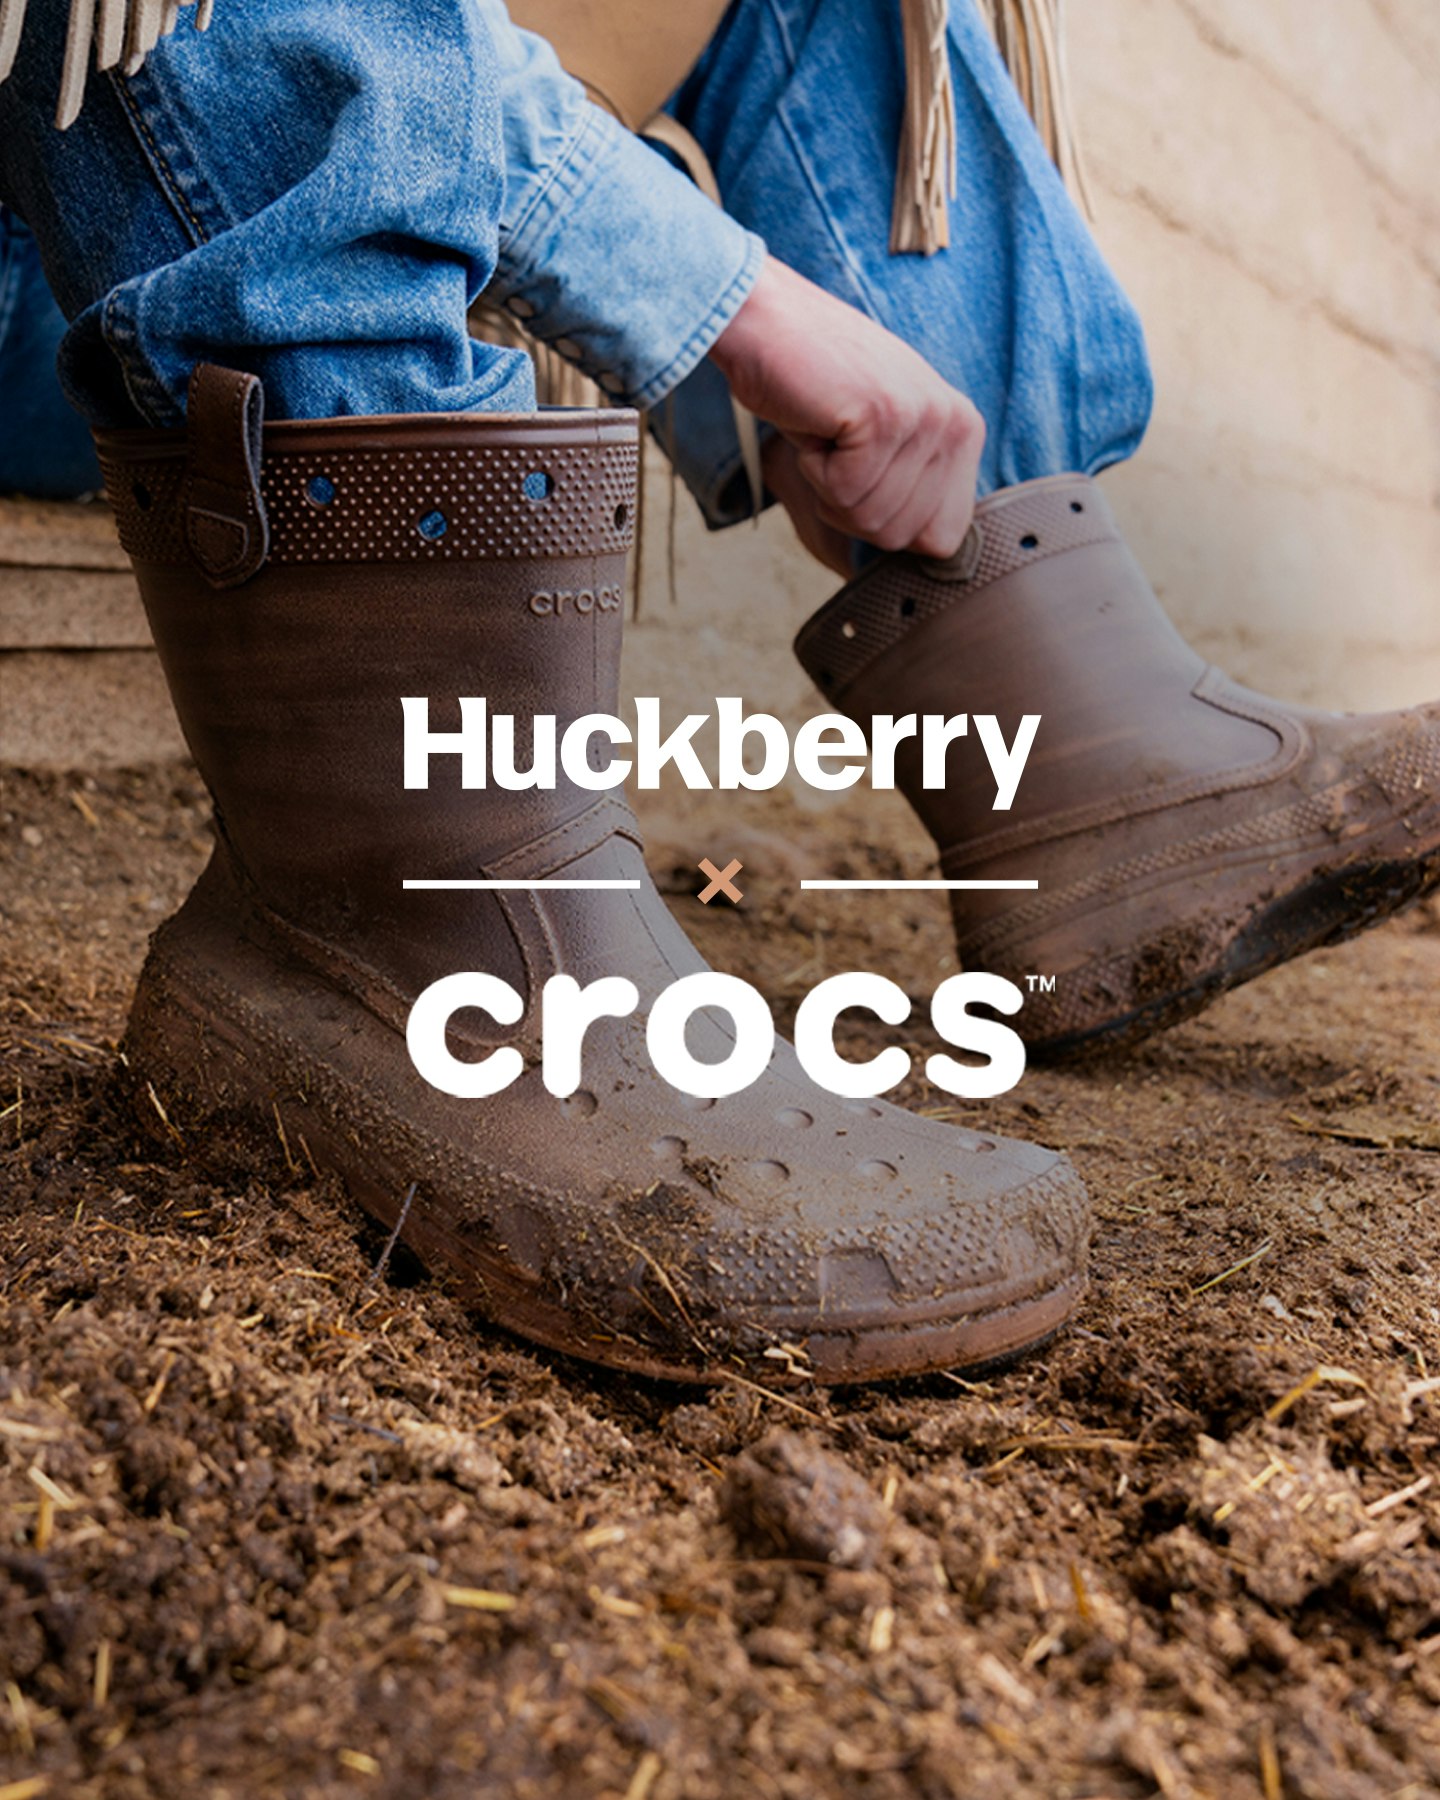 Huckberry crocs